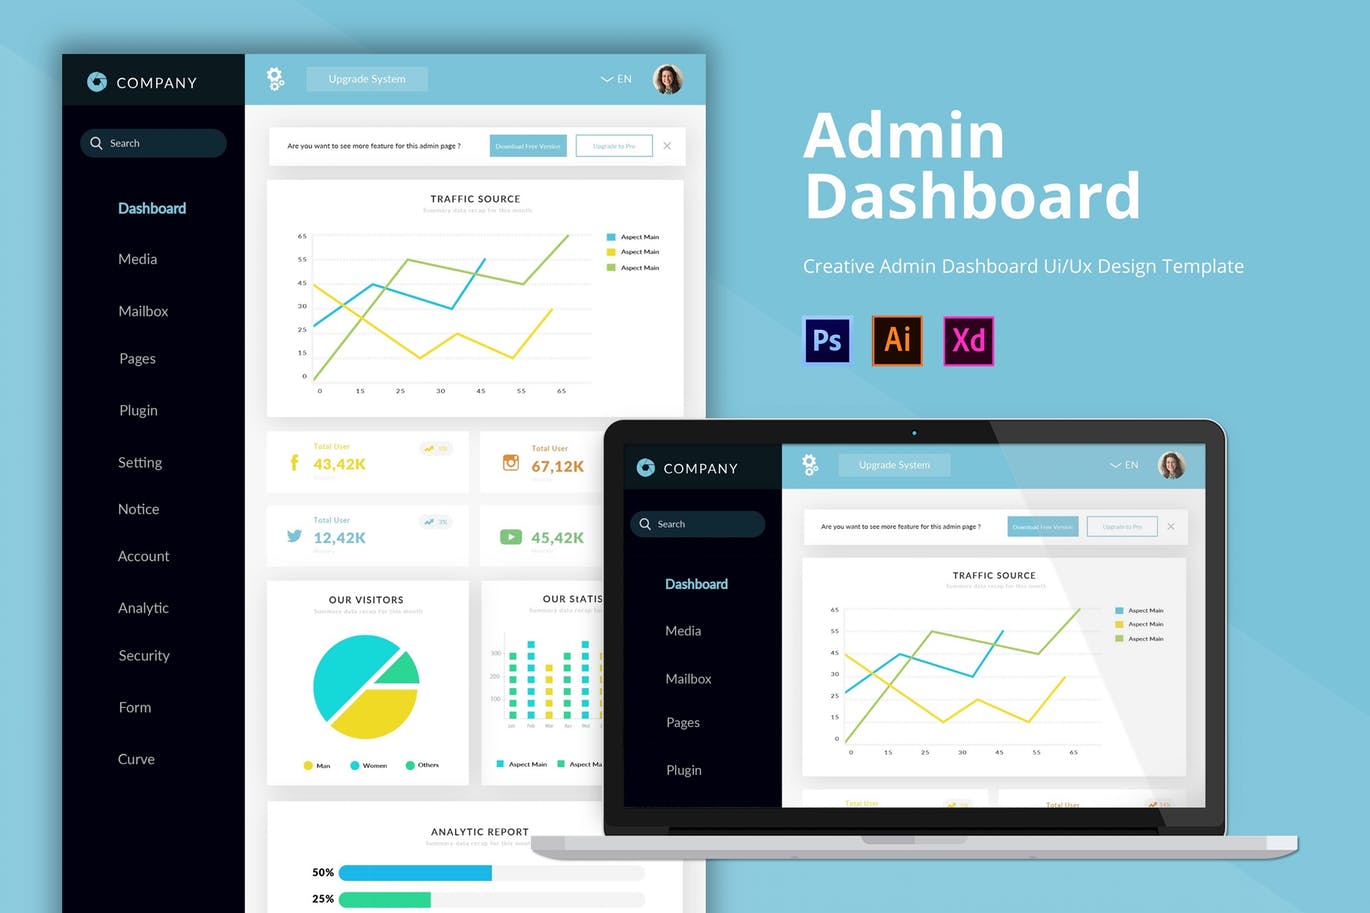 公司网站数据统计后台界面设计第一素材精选模板 Company Admin Dashboard插图